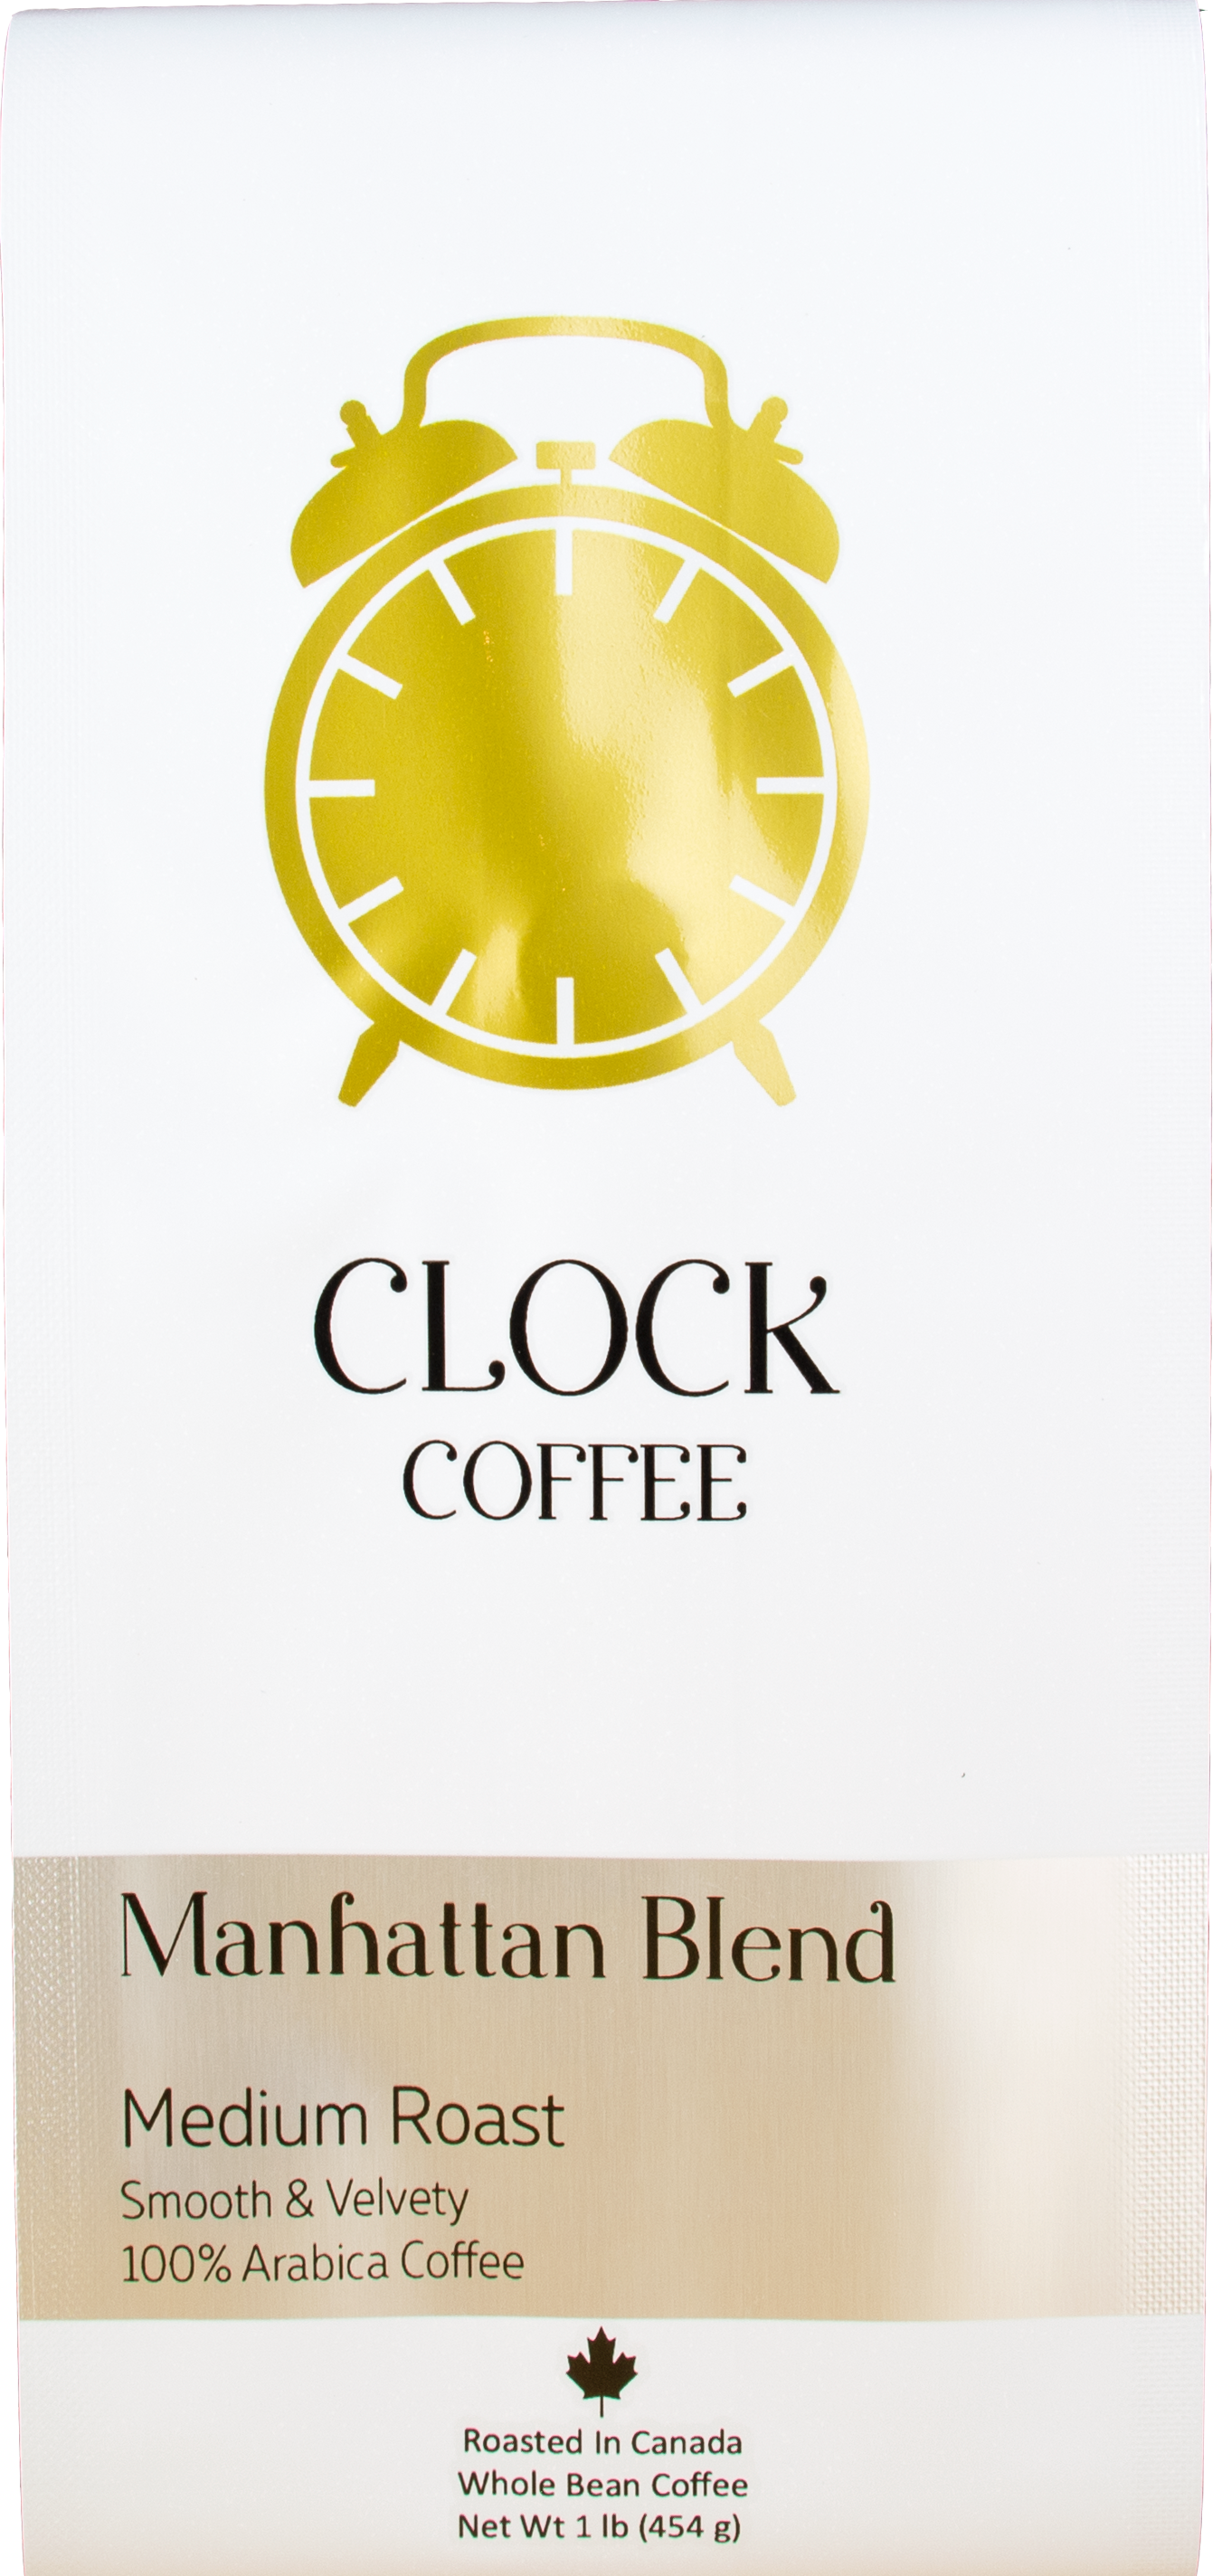 Clock Coffee, Manhattan Blend, Medium Roast, Whole Bean, 1 lb (454g), 100% Arabica Coffee